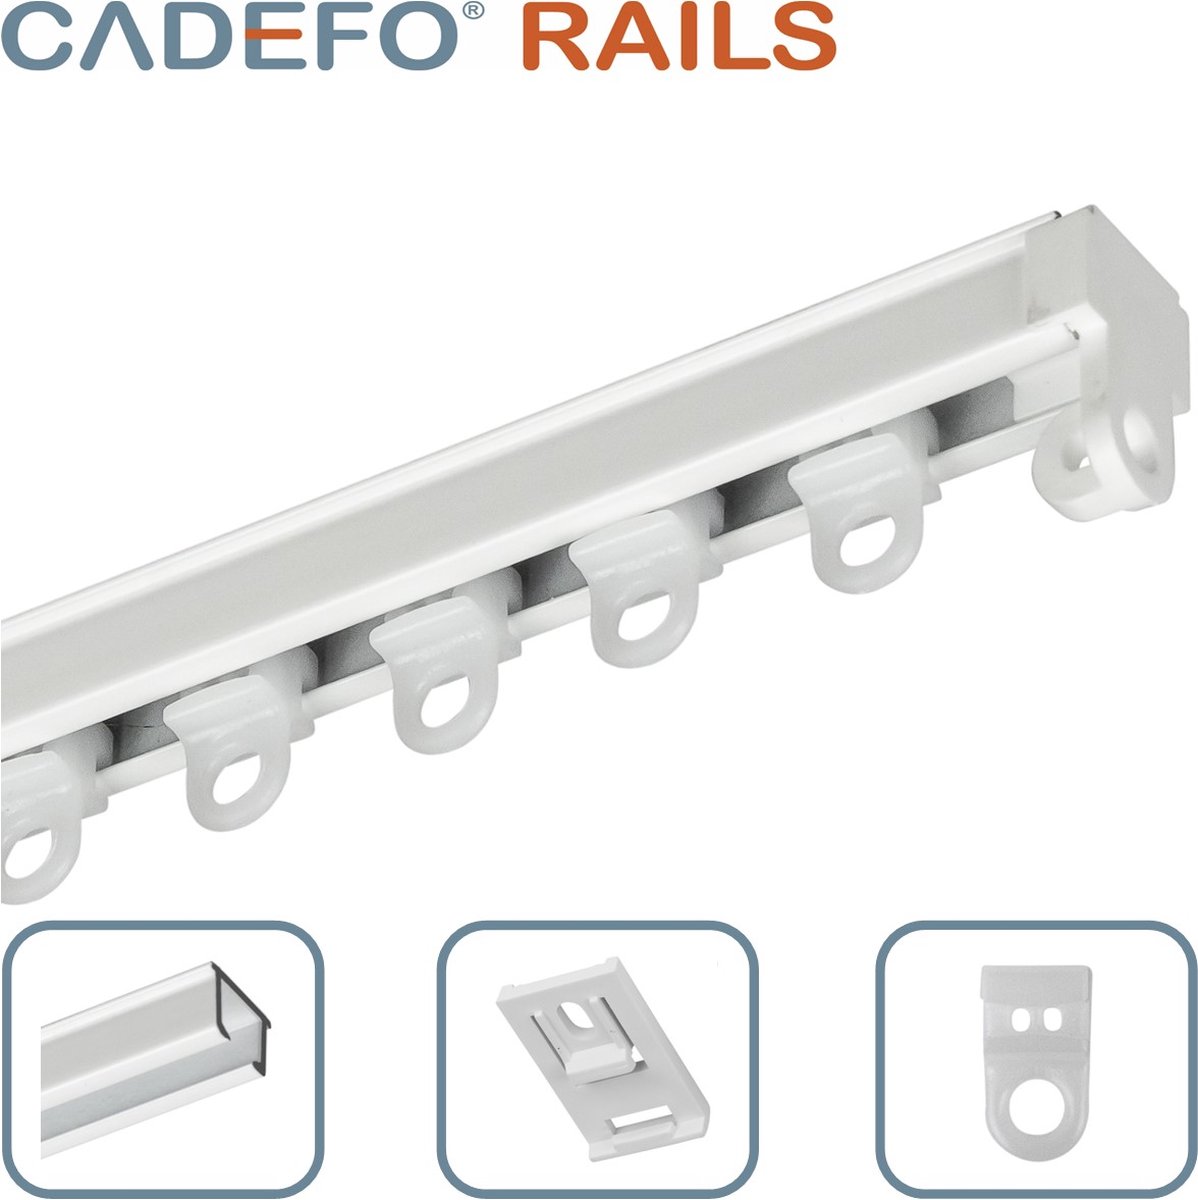 CADEFO RAILS (401 - 450 cm) Gordijnrails - Compleet op maat! - UIT 1 STUK - Leverbaar tot 6 meter - Plafondbevestiging - Lengte 433 cm